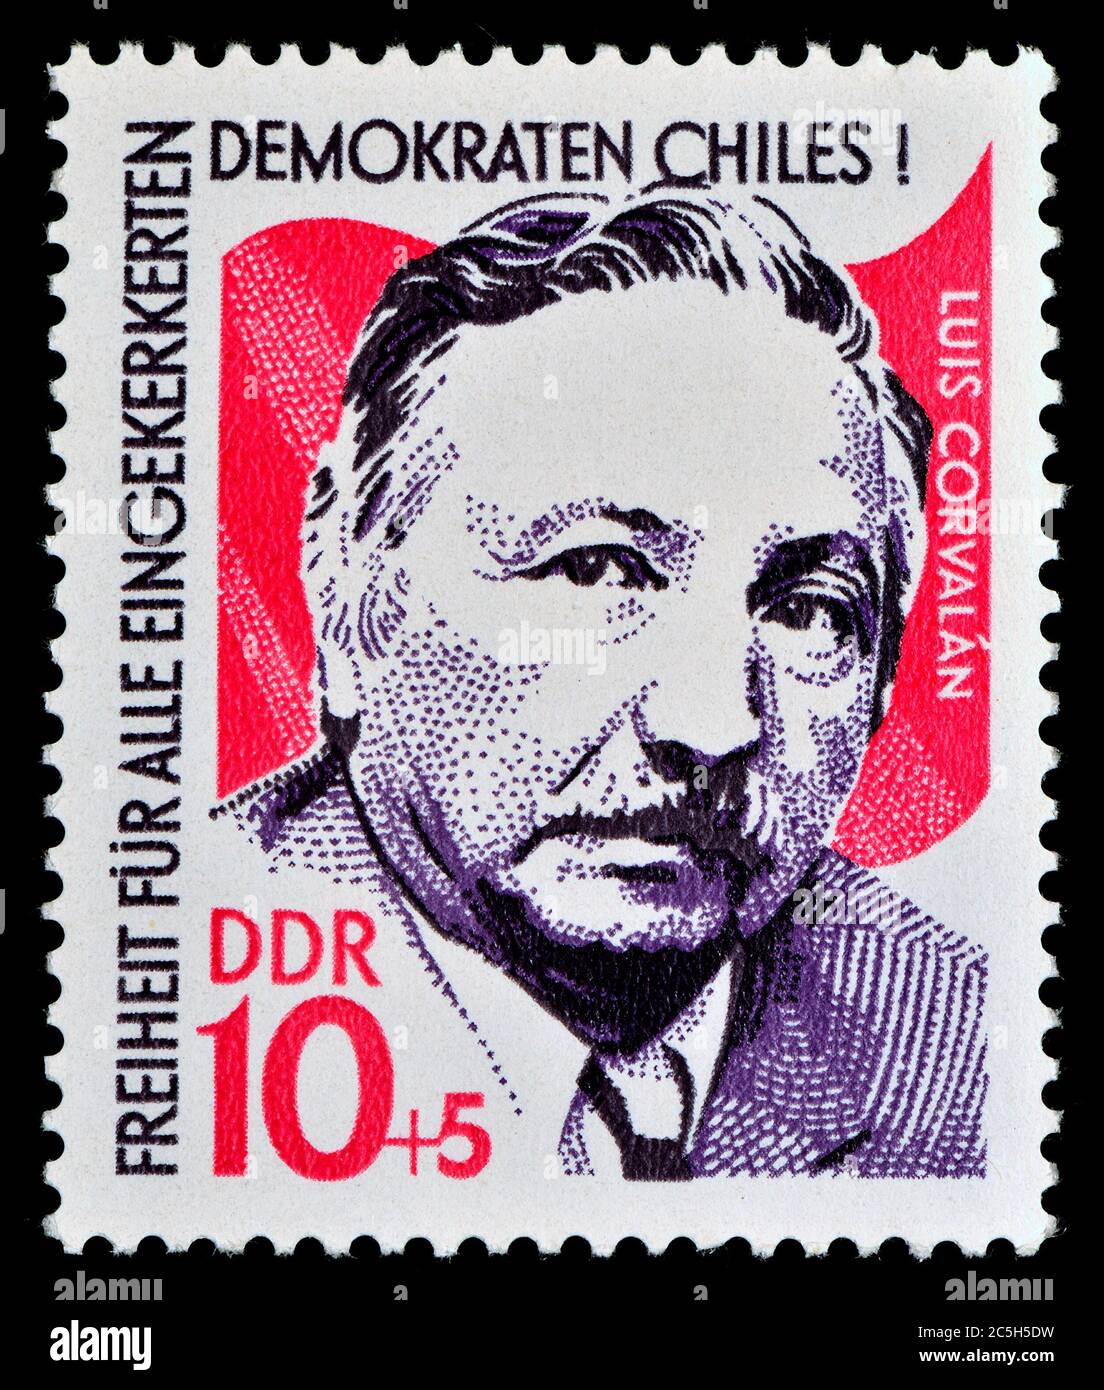 Francobollo tedesco orientale (1973) : Luis Alberto Corvalán Lepe (1916 - 2010) politico cileno. Ha servito come segretario generale del Pa comunista Foto Stock